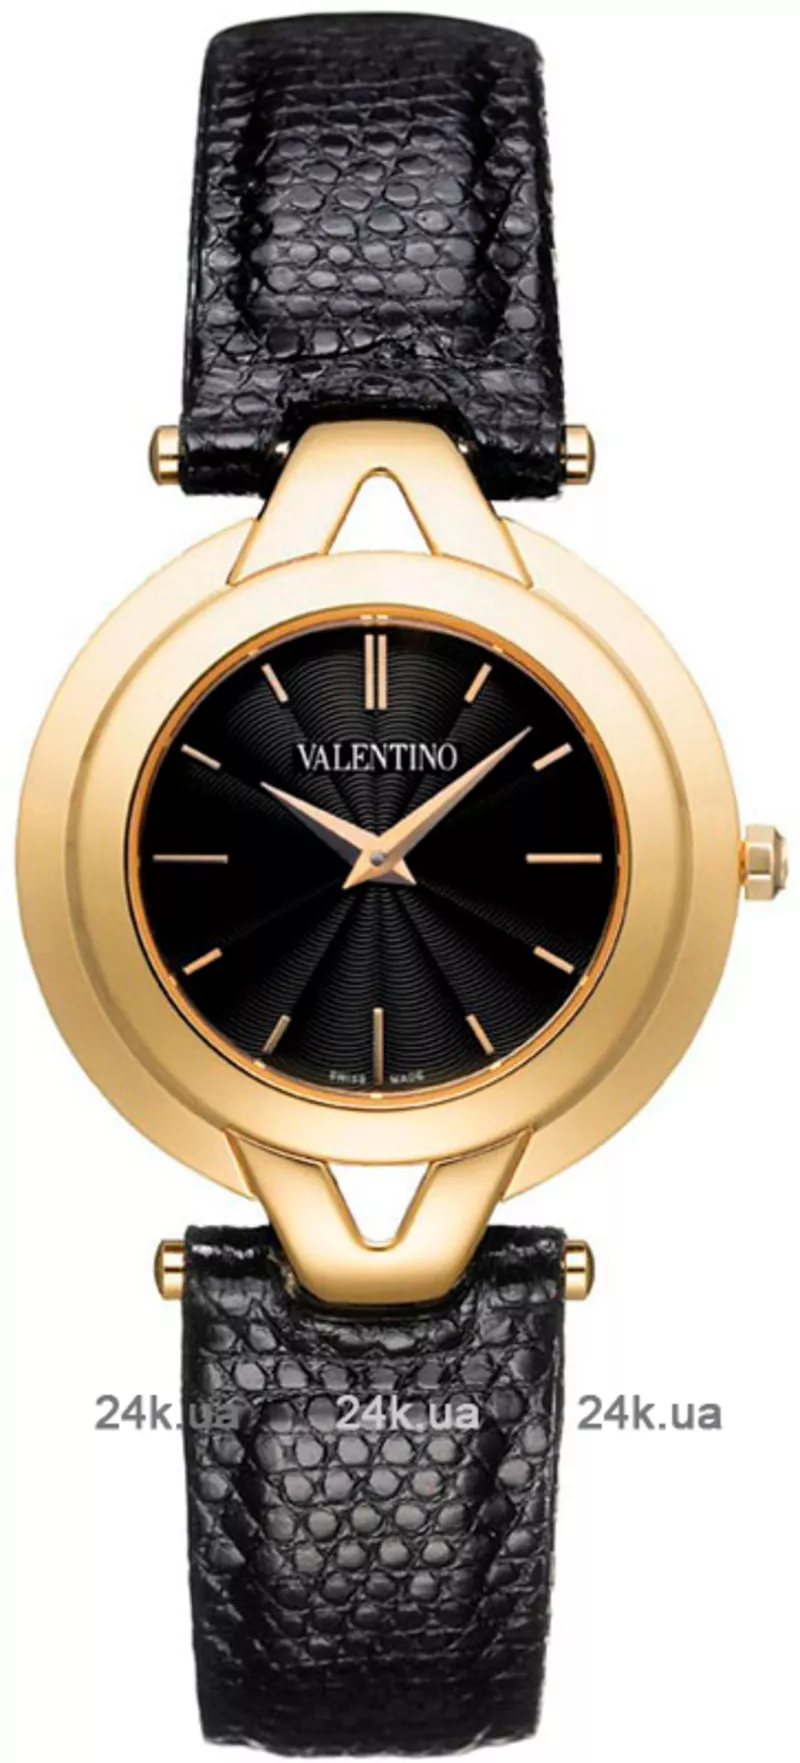 Часы Valentino VL38SBQ5009 S009